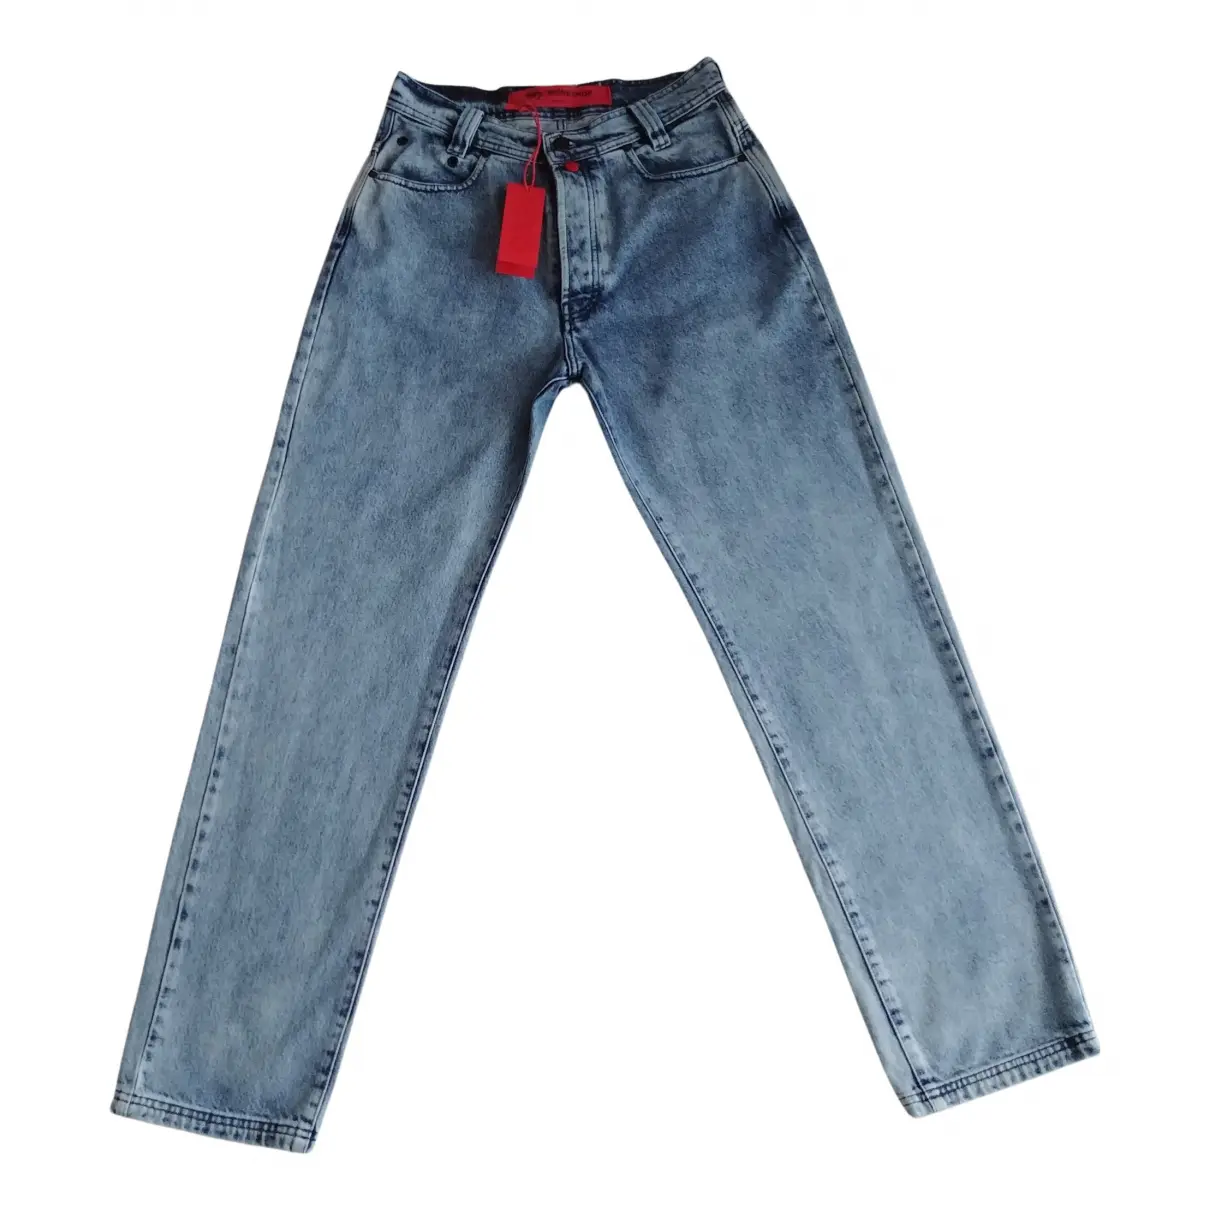 Blue Cotton Jeans 032c